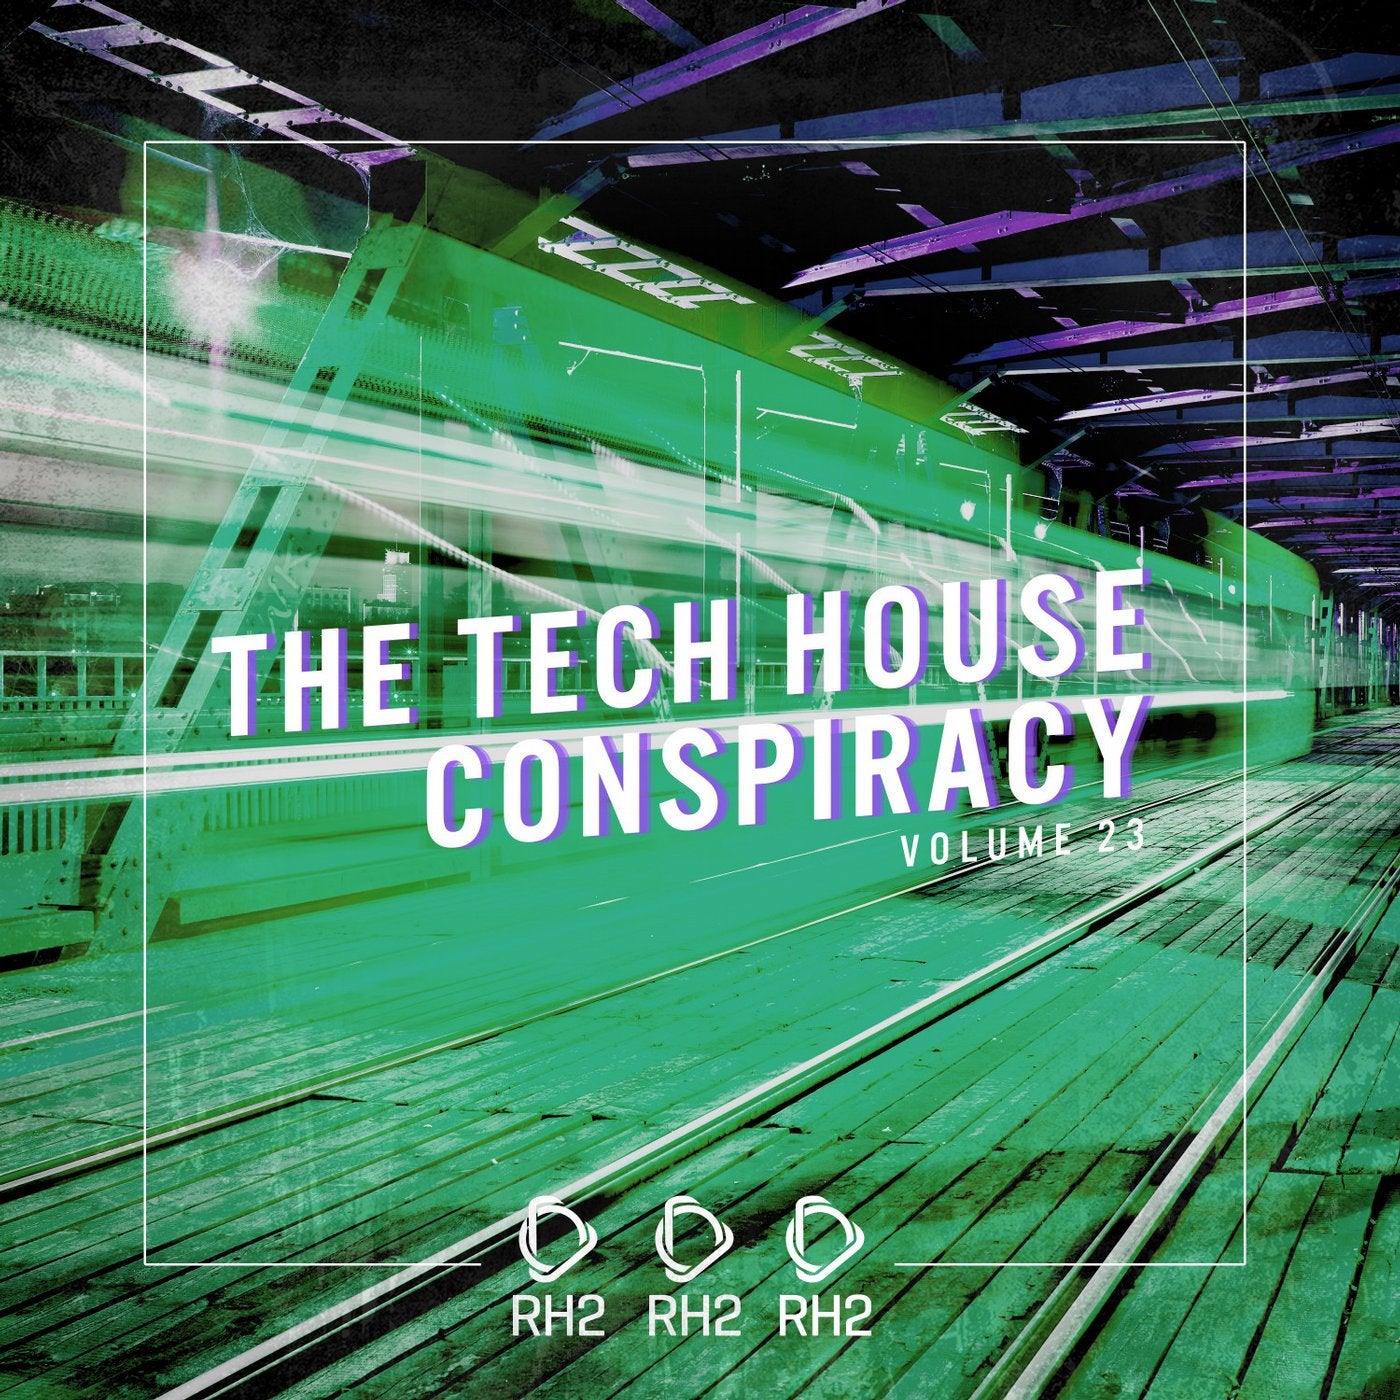 The Tech House Conspiracy Vol. 23